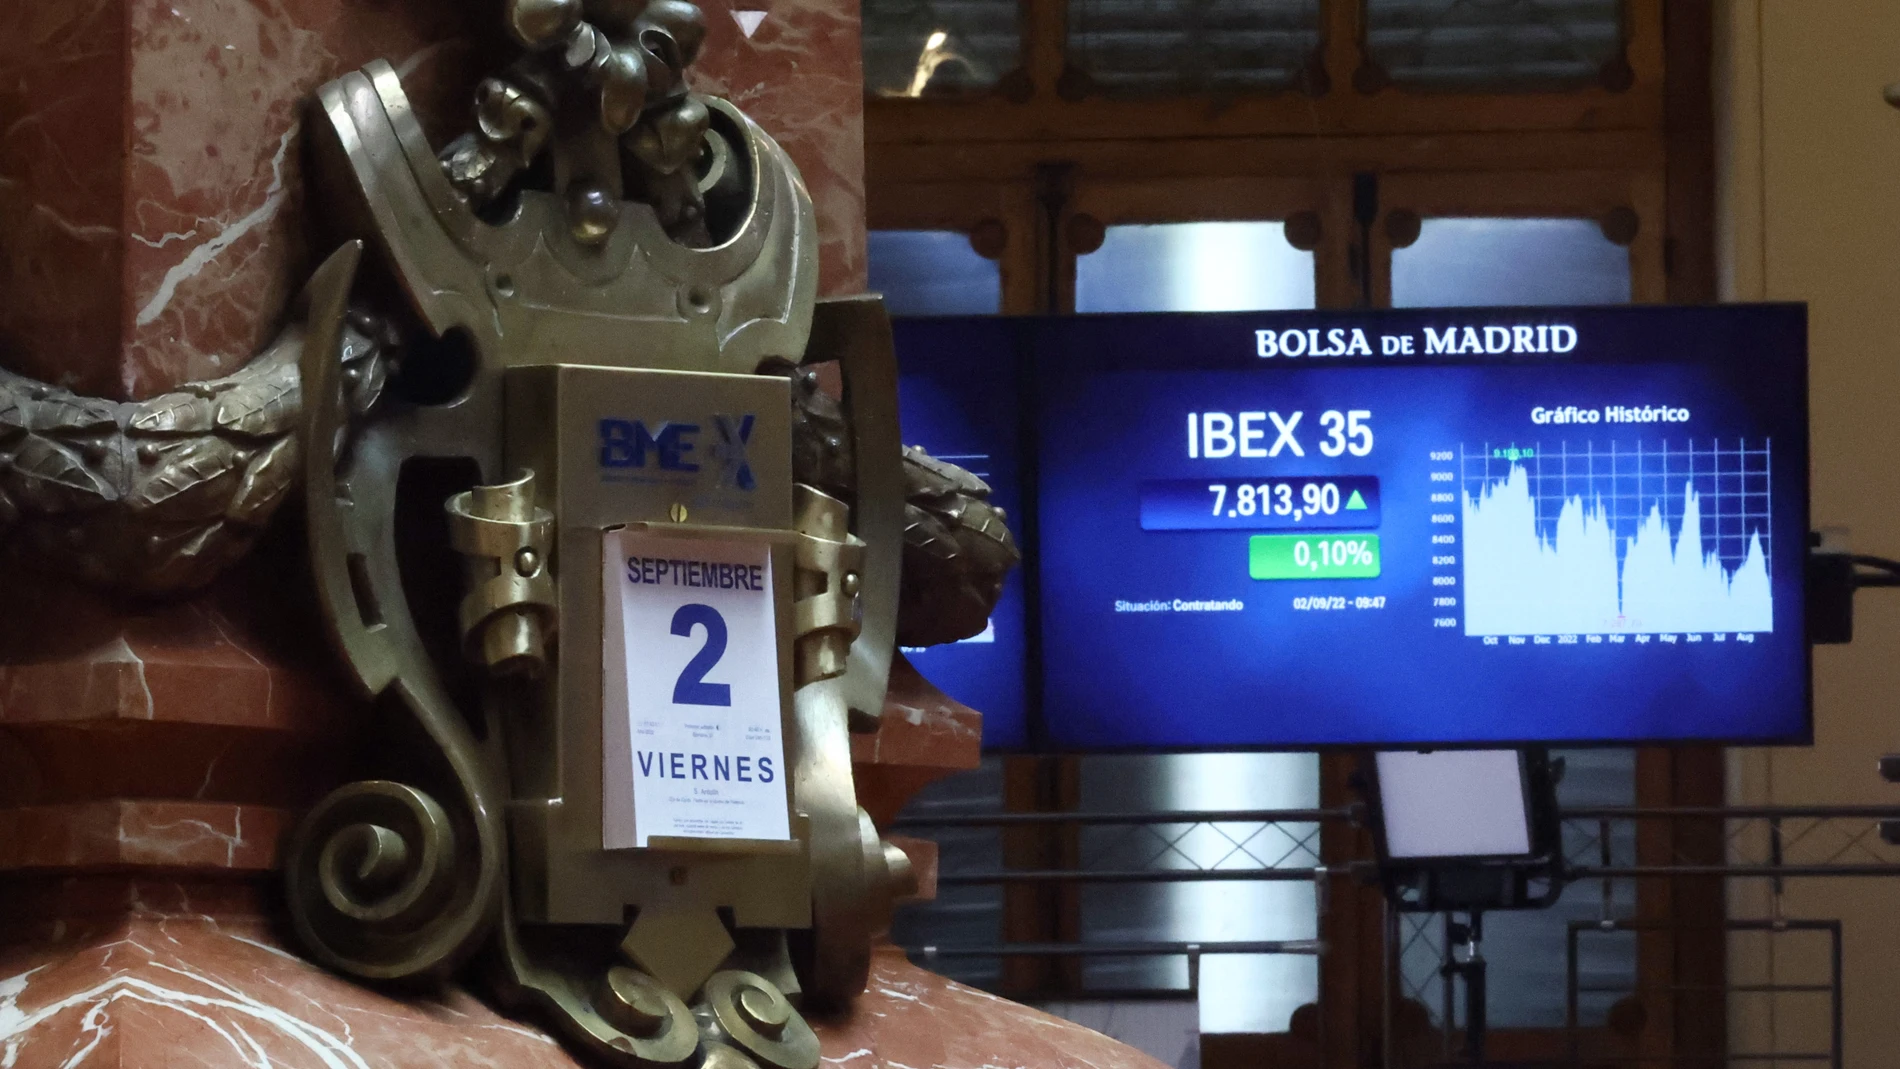 El Ibex 35 ha abierto la sesión con una subida del 0,3%, lo que ha llevado al selectivo a situarse en los 7.829